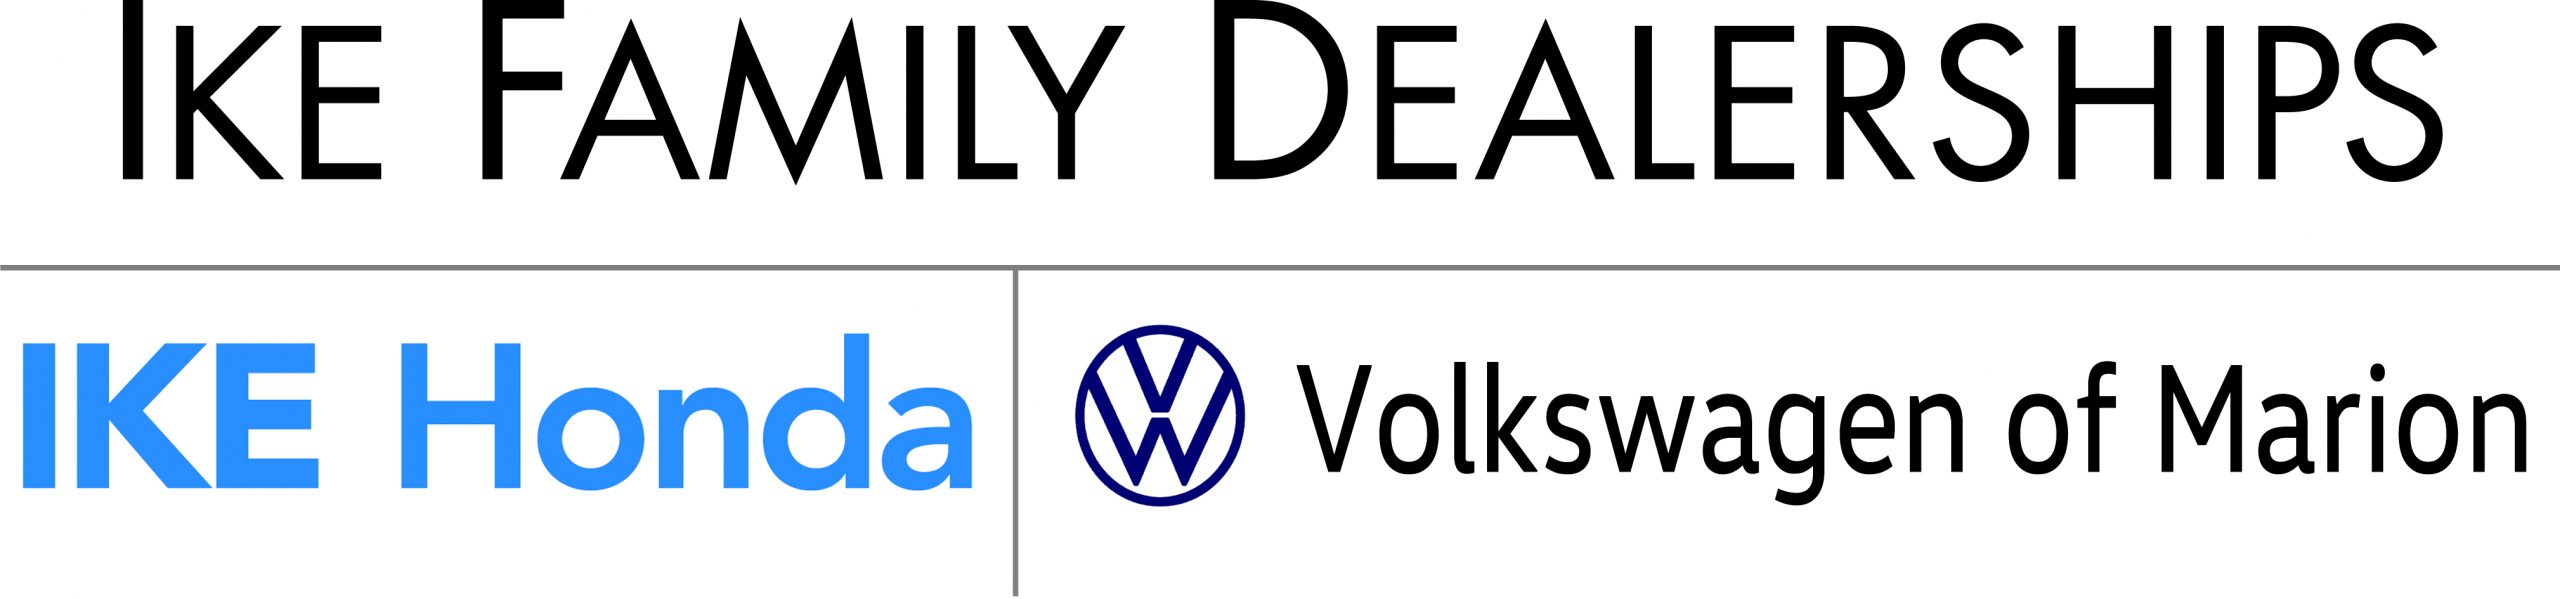 Ike Family Dealerships: Ike Honda & VW of Marion